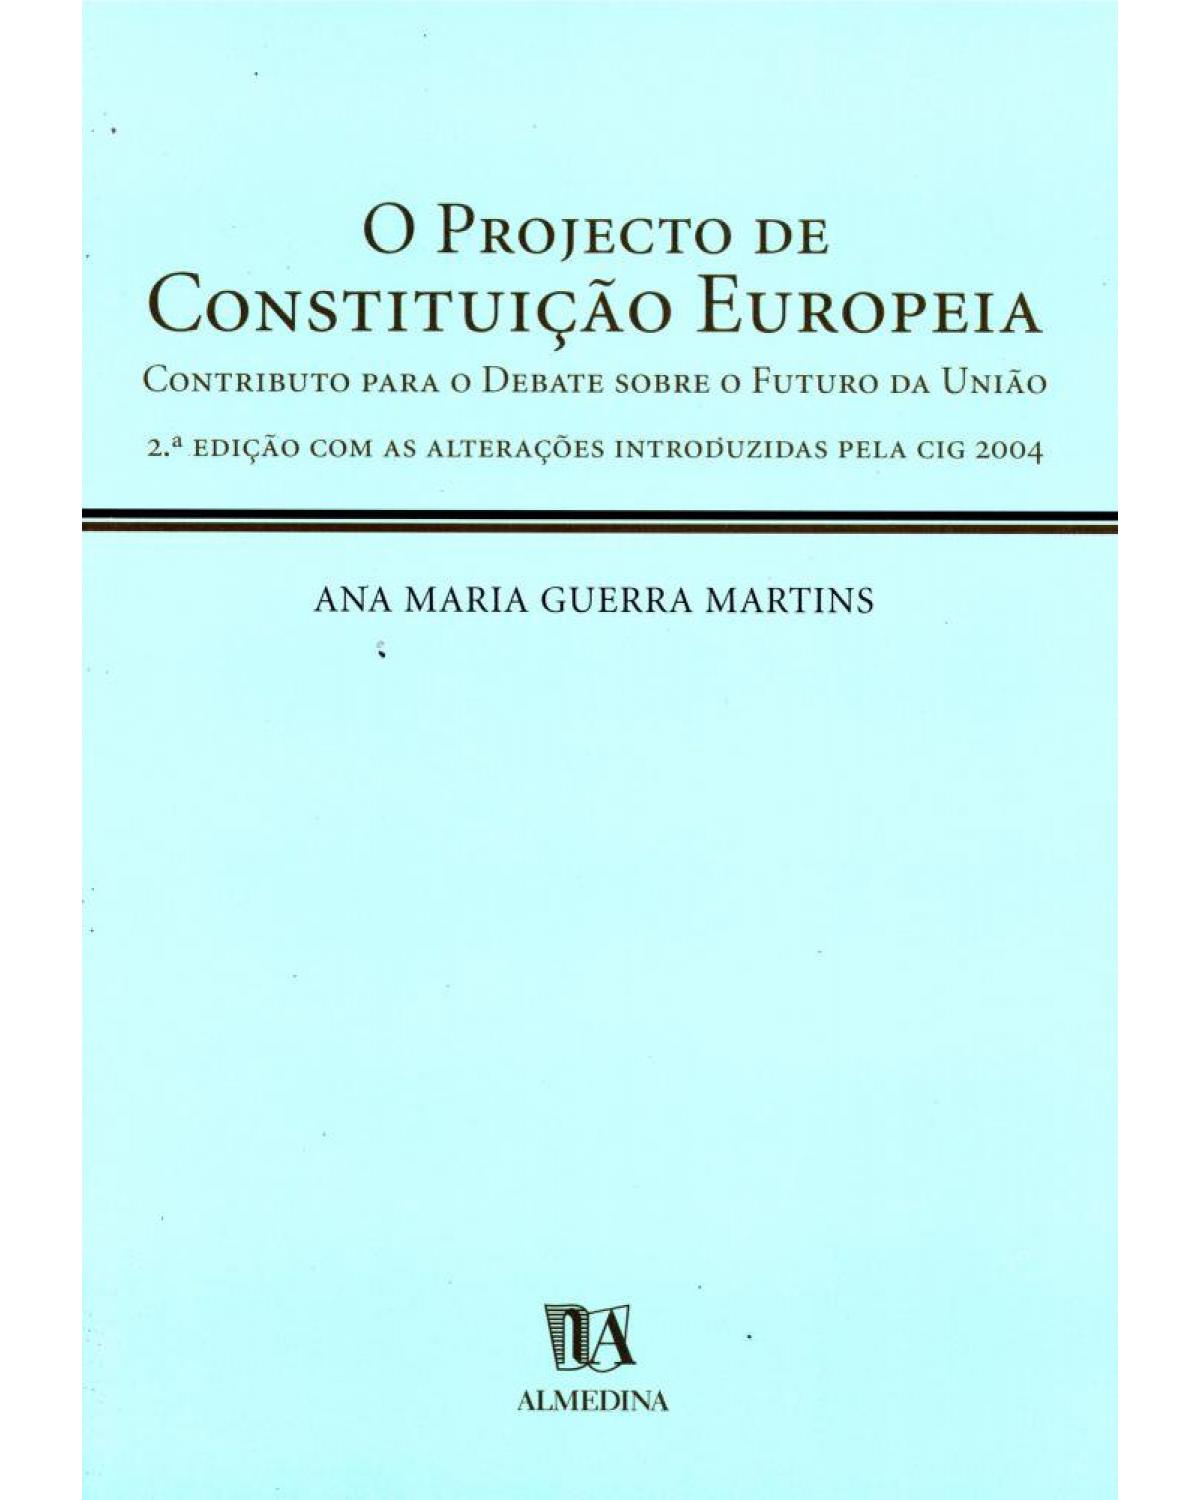 O projecto de constituição europeia - contributo para o debate sobre o futuro da União - 2ª Edição | 2004